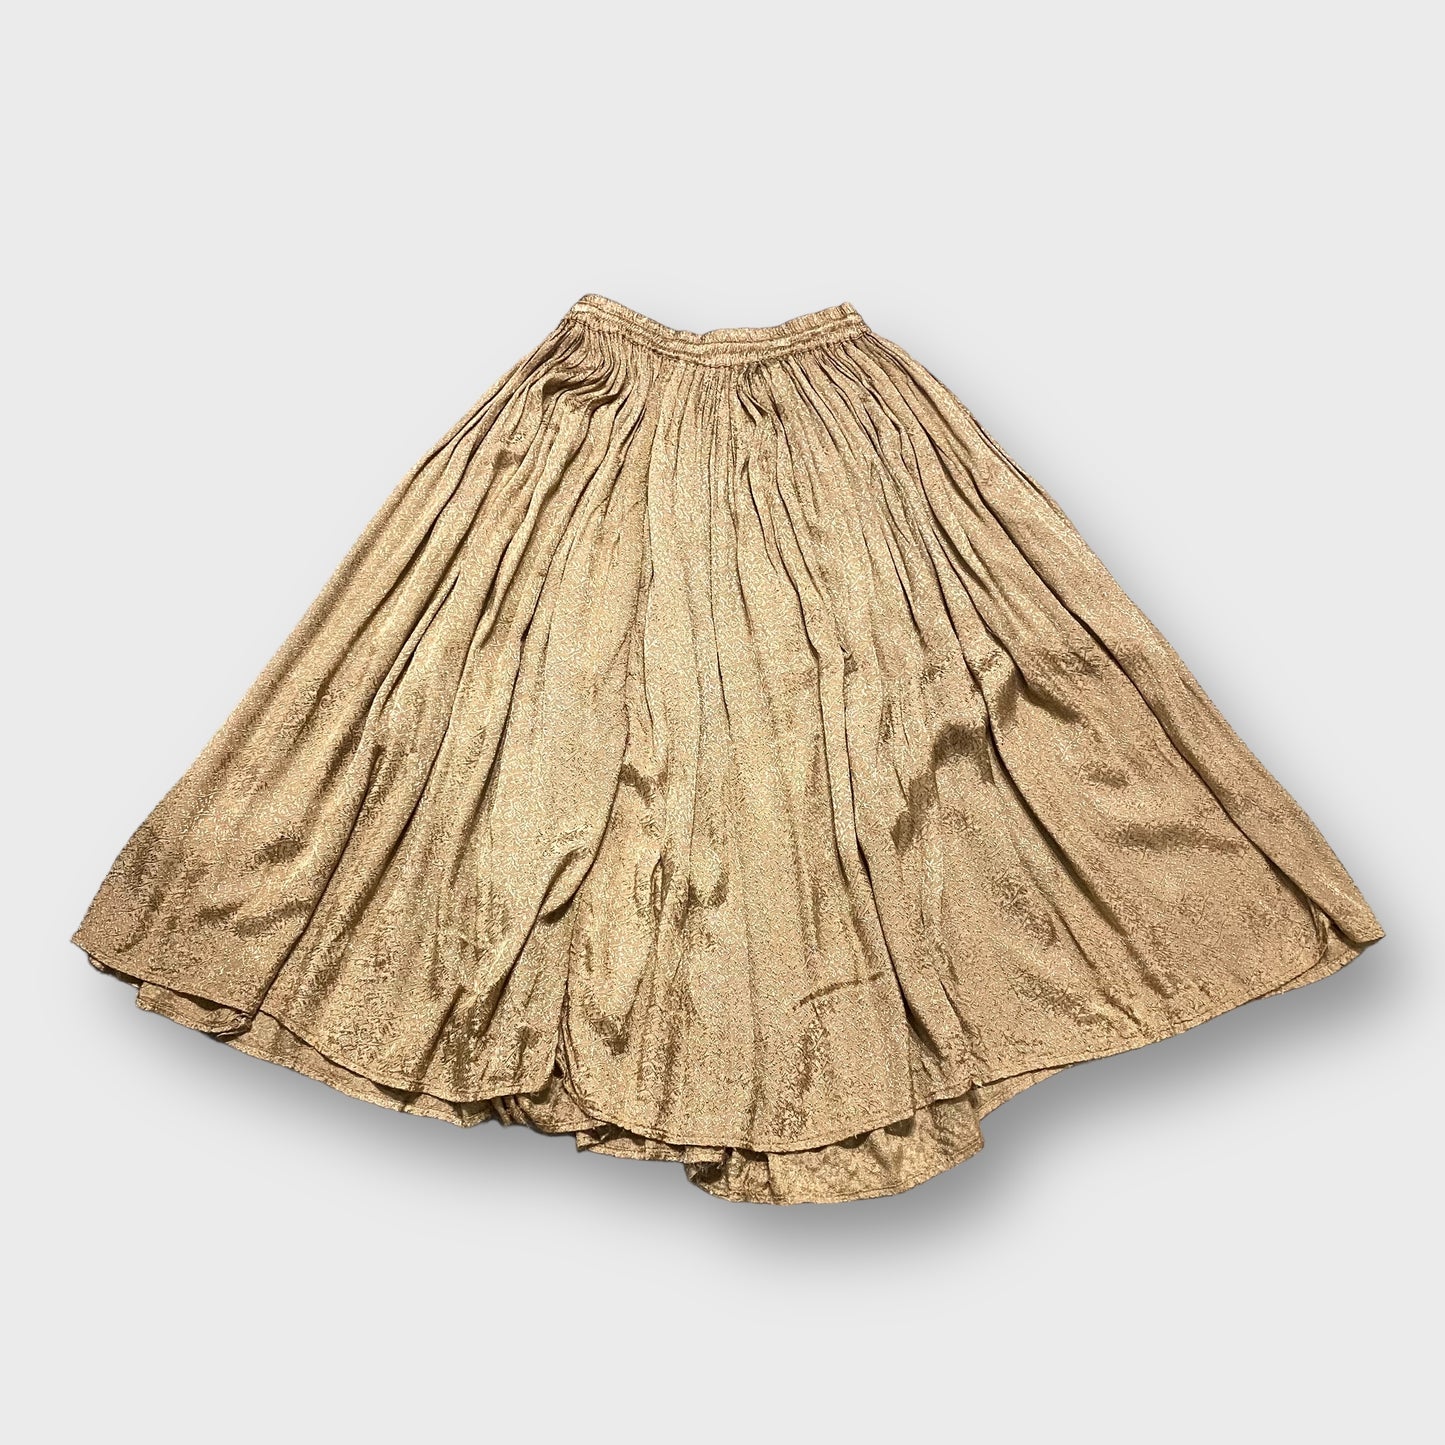 Flower pattern satin skirt